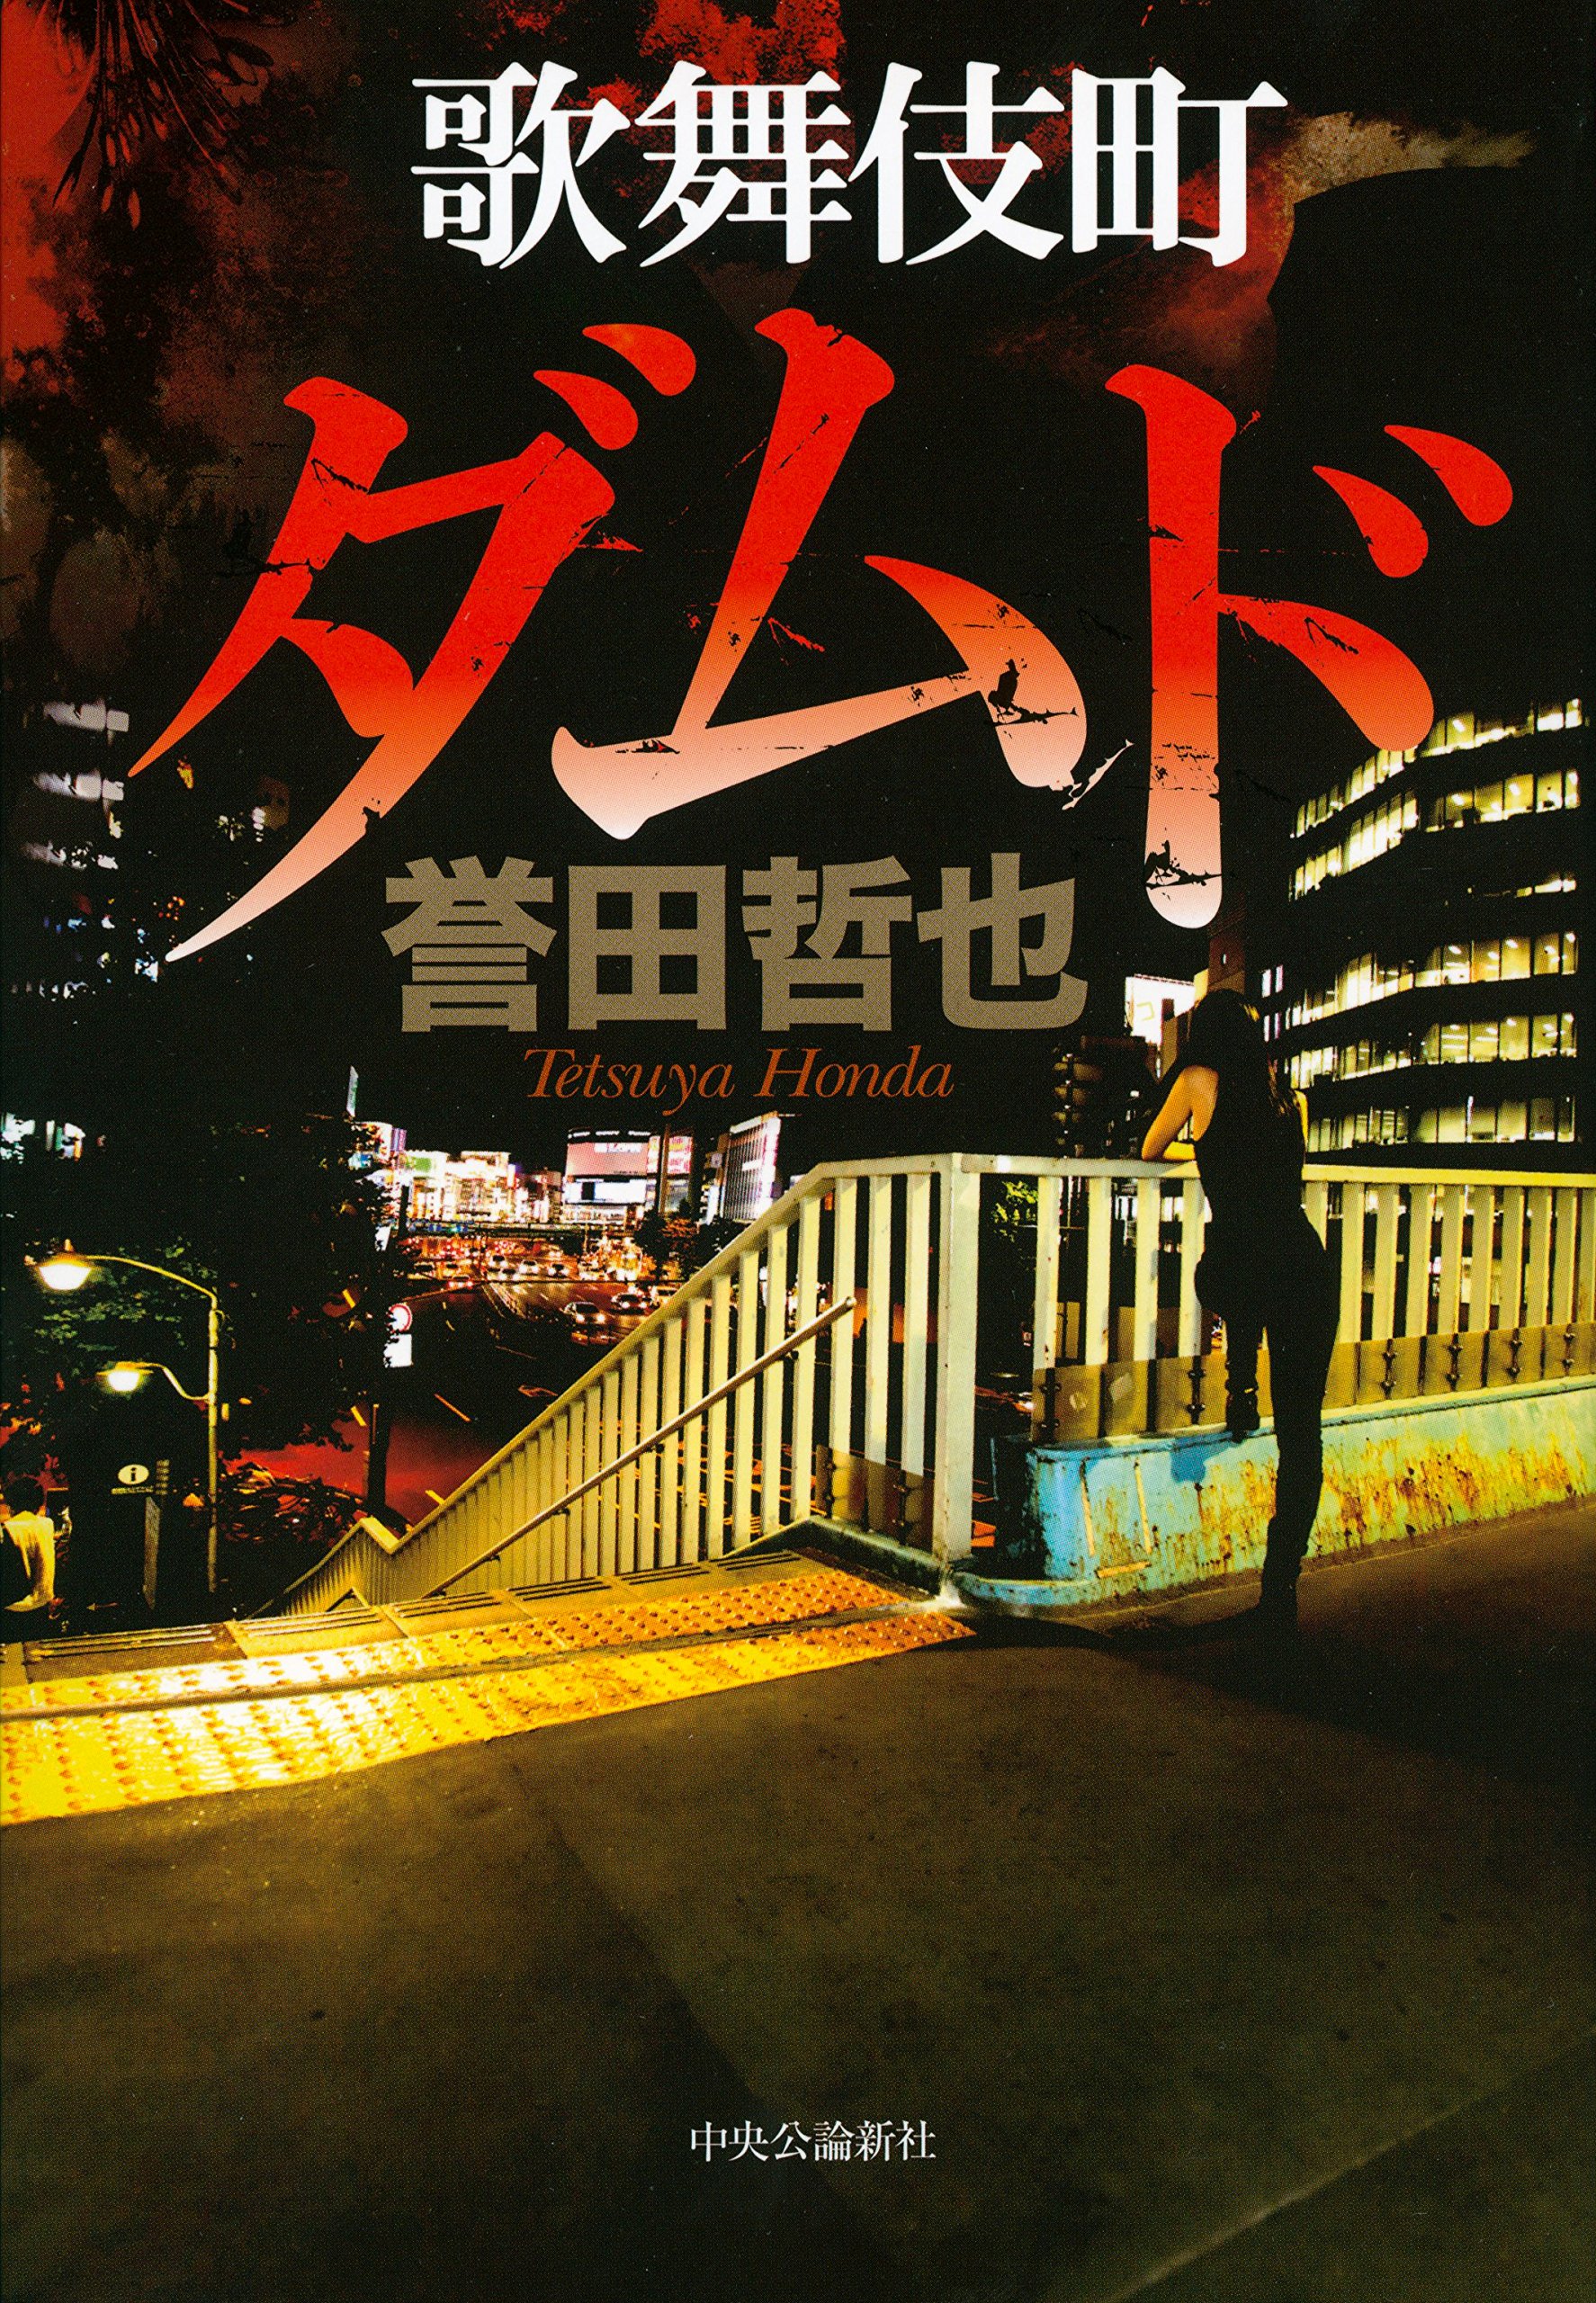 歌舞伎町が騒ぐ・揺れる！誉田哲也が描く歌舞伎町アンダーグラウンドエンターテインメント第2弾